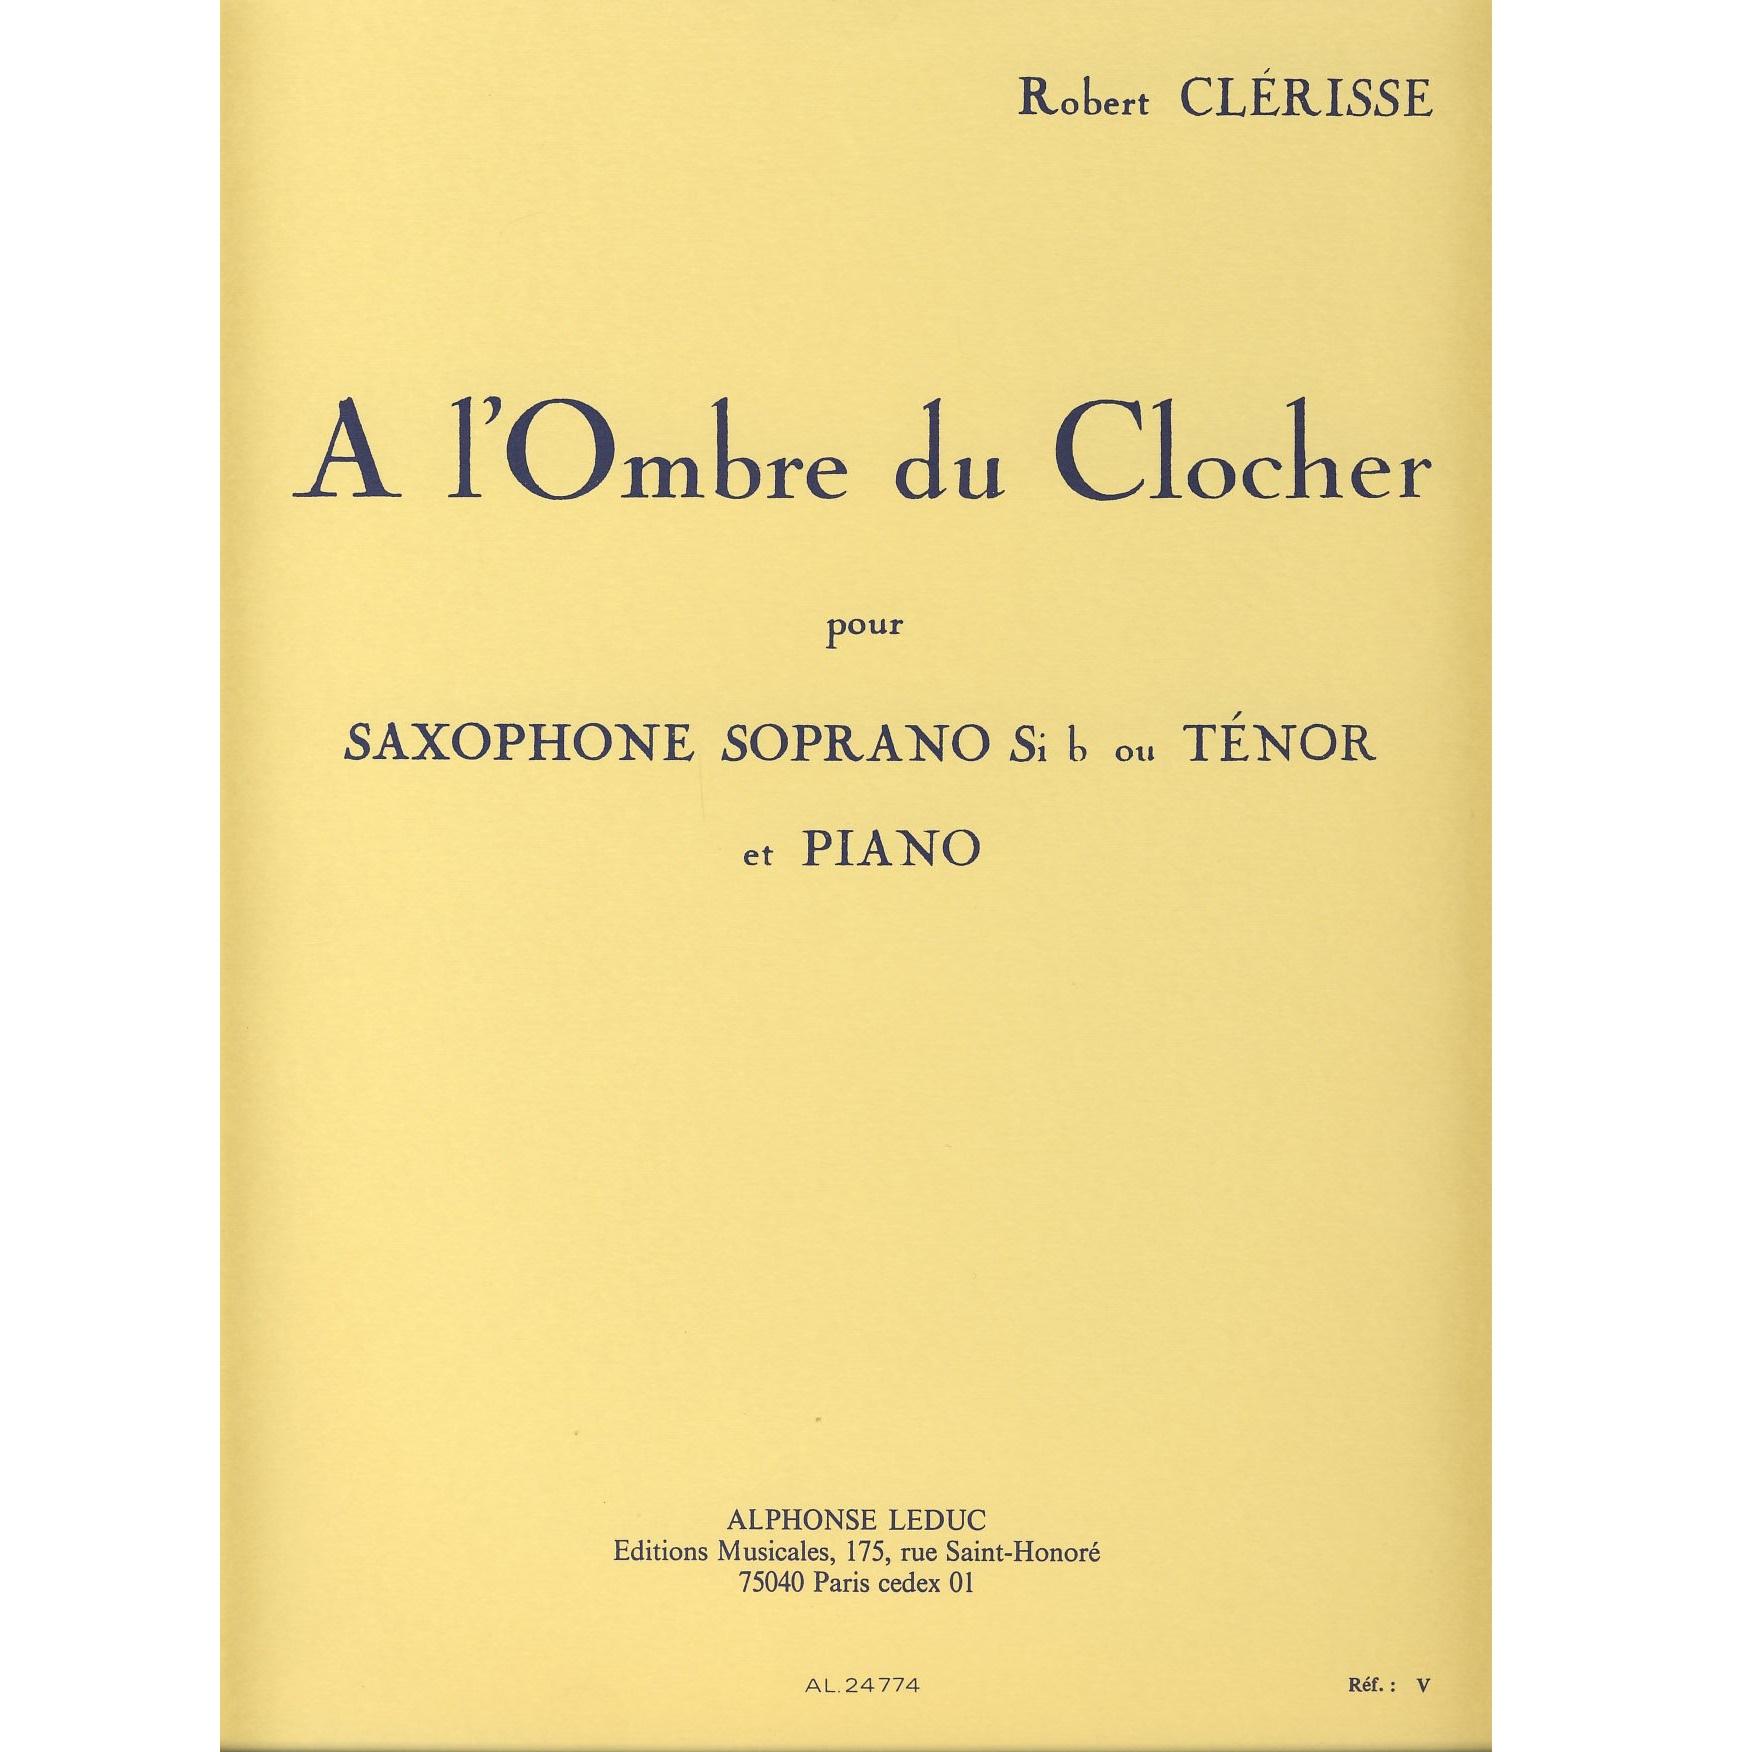 A l'Ombre du Clocher pour Saxophone soprano Sib ou Tenor et Piano - Alphonse Leduc